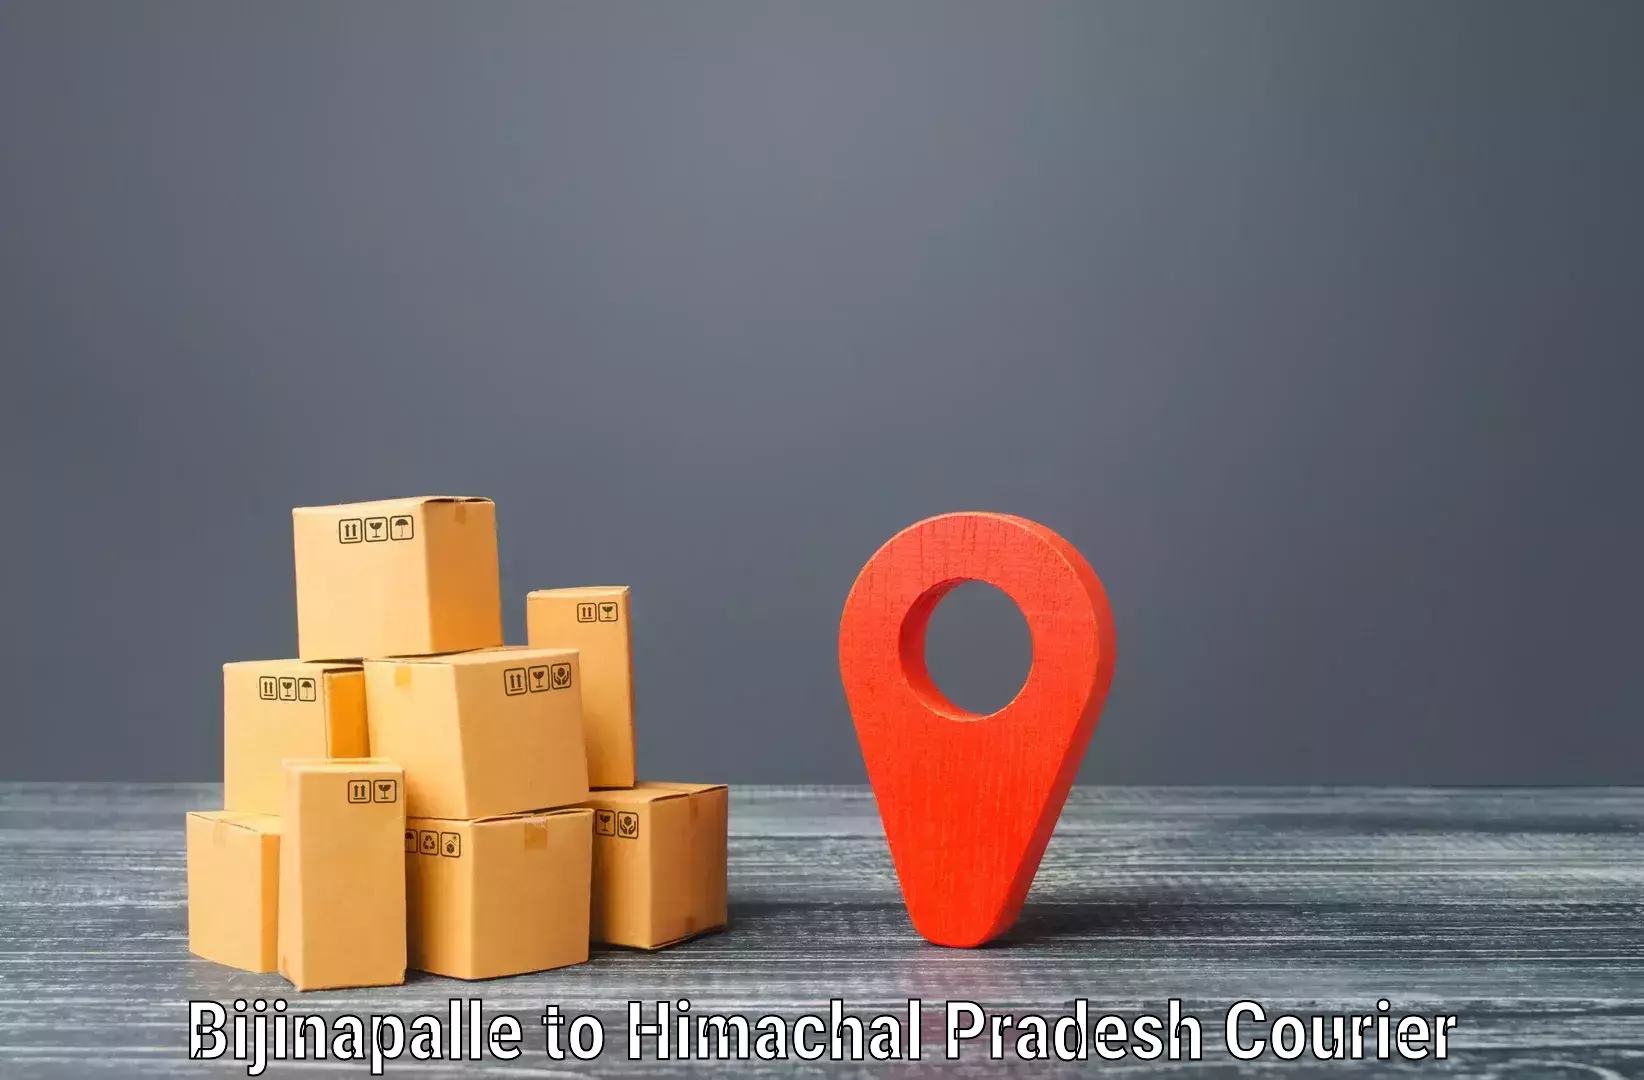 Next-day freight services Bijinapalle to Shahpur Kangra